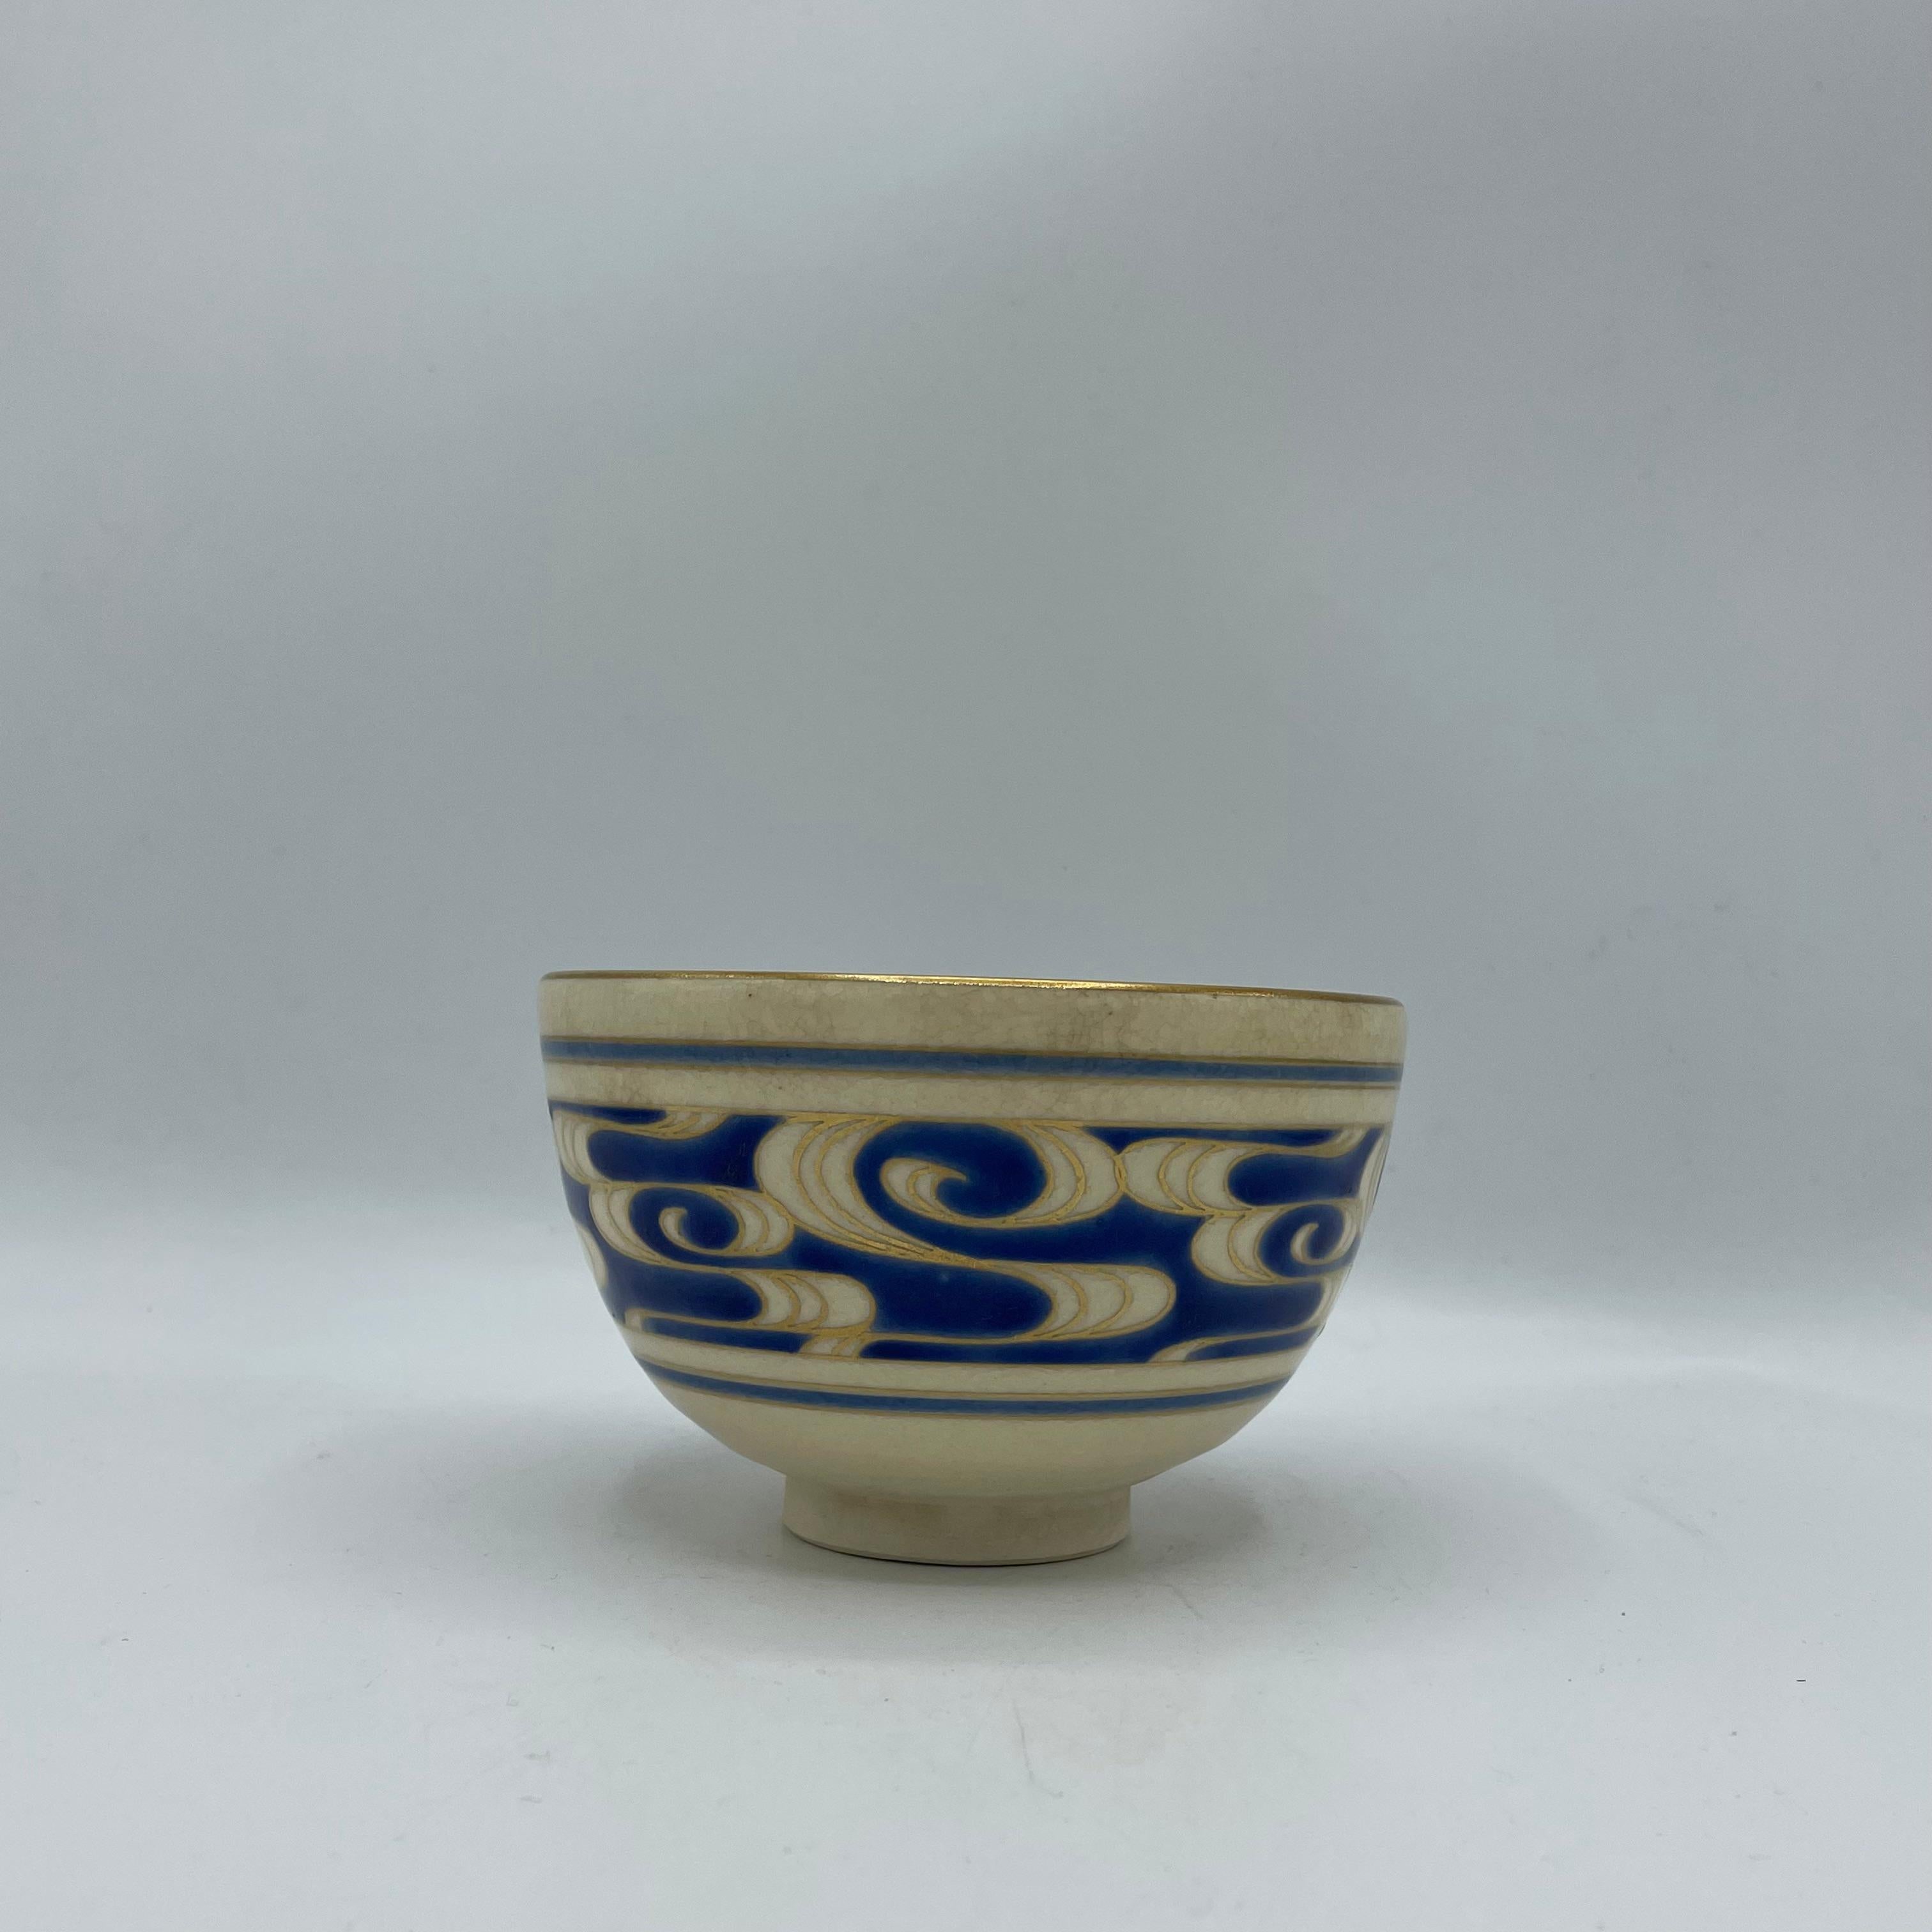 Il s'agit d'un bol à matcha pour la cérémonie du thé.
Ce bol est en porcelaine et a été fabriqué dans les années 1970, à l'ère Showa.
Dimensions : 12 x 12 x H7,5 cm : 12 x 12 x H7,5 cm 